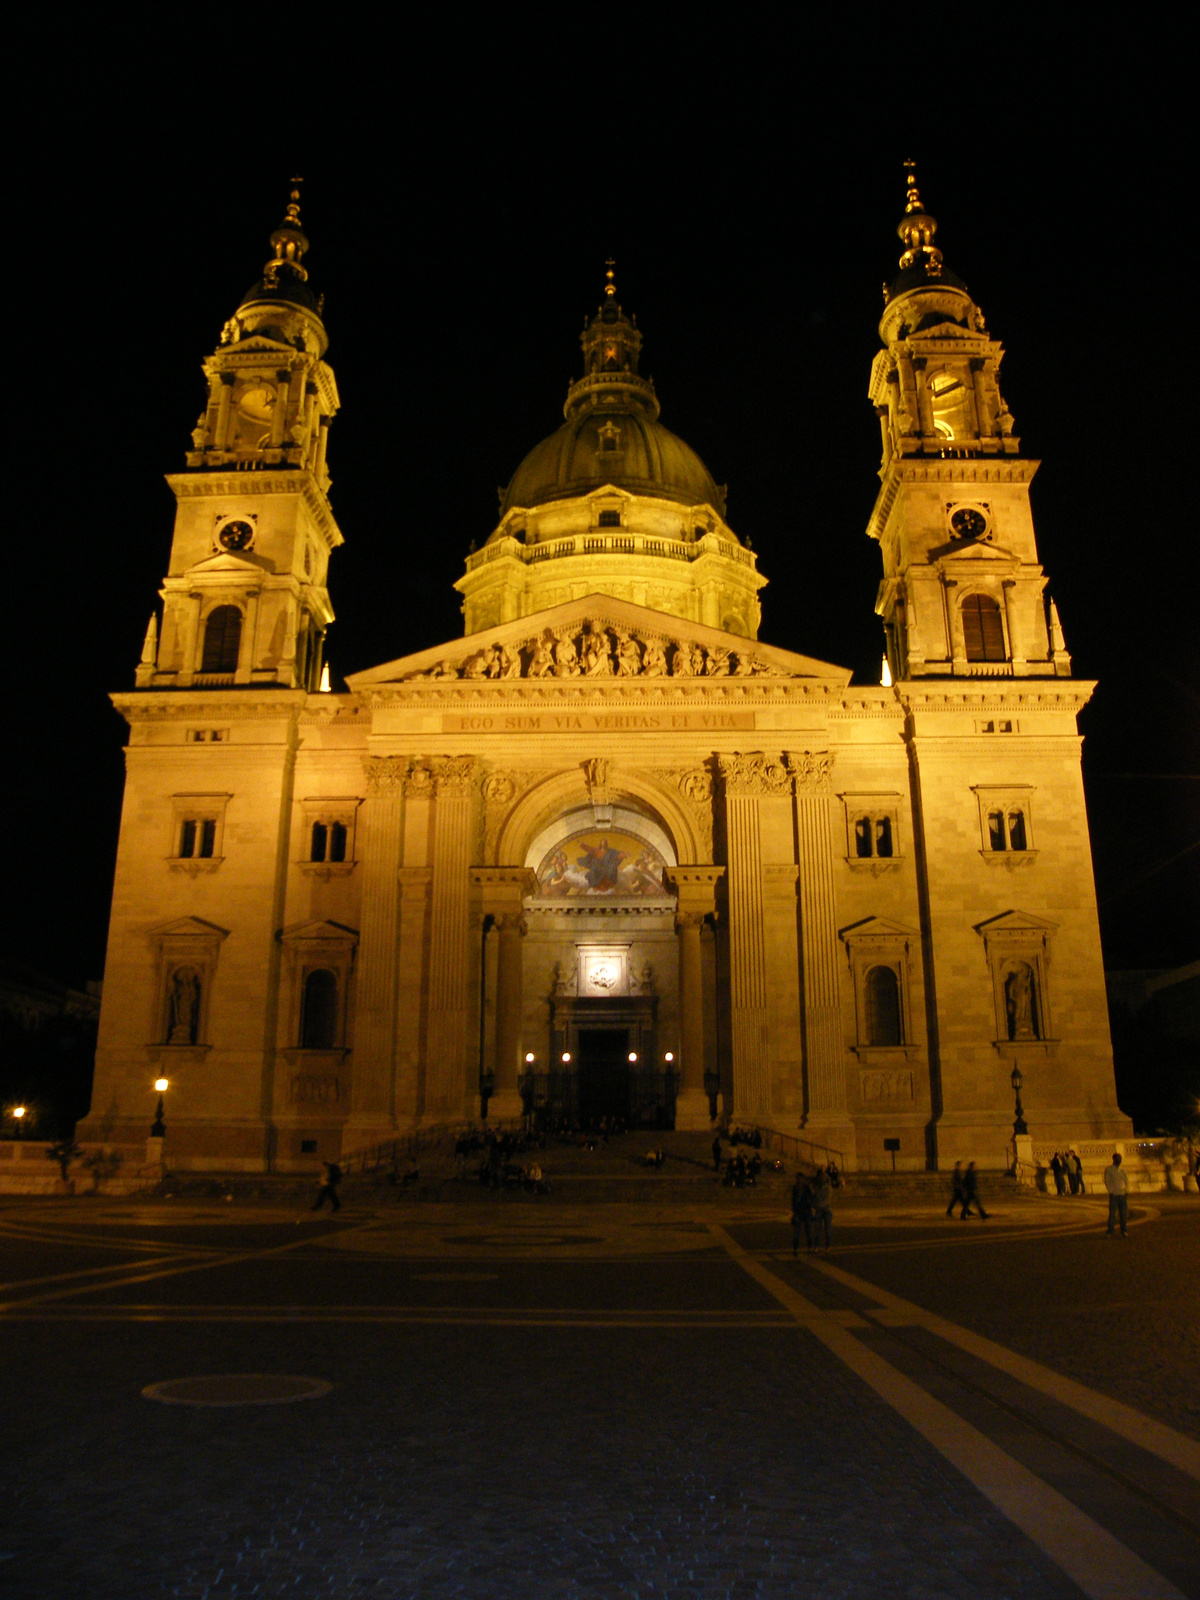 Szent István Bazilika